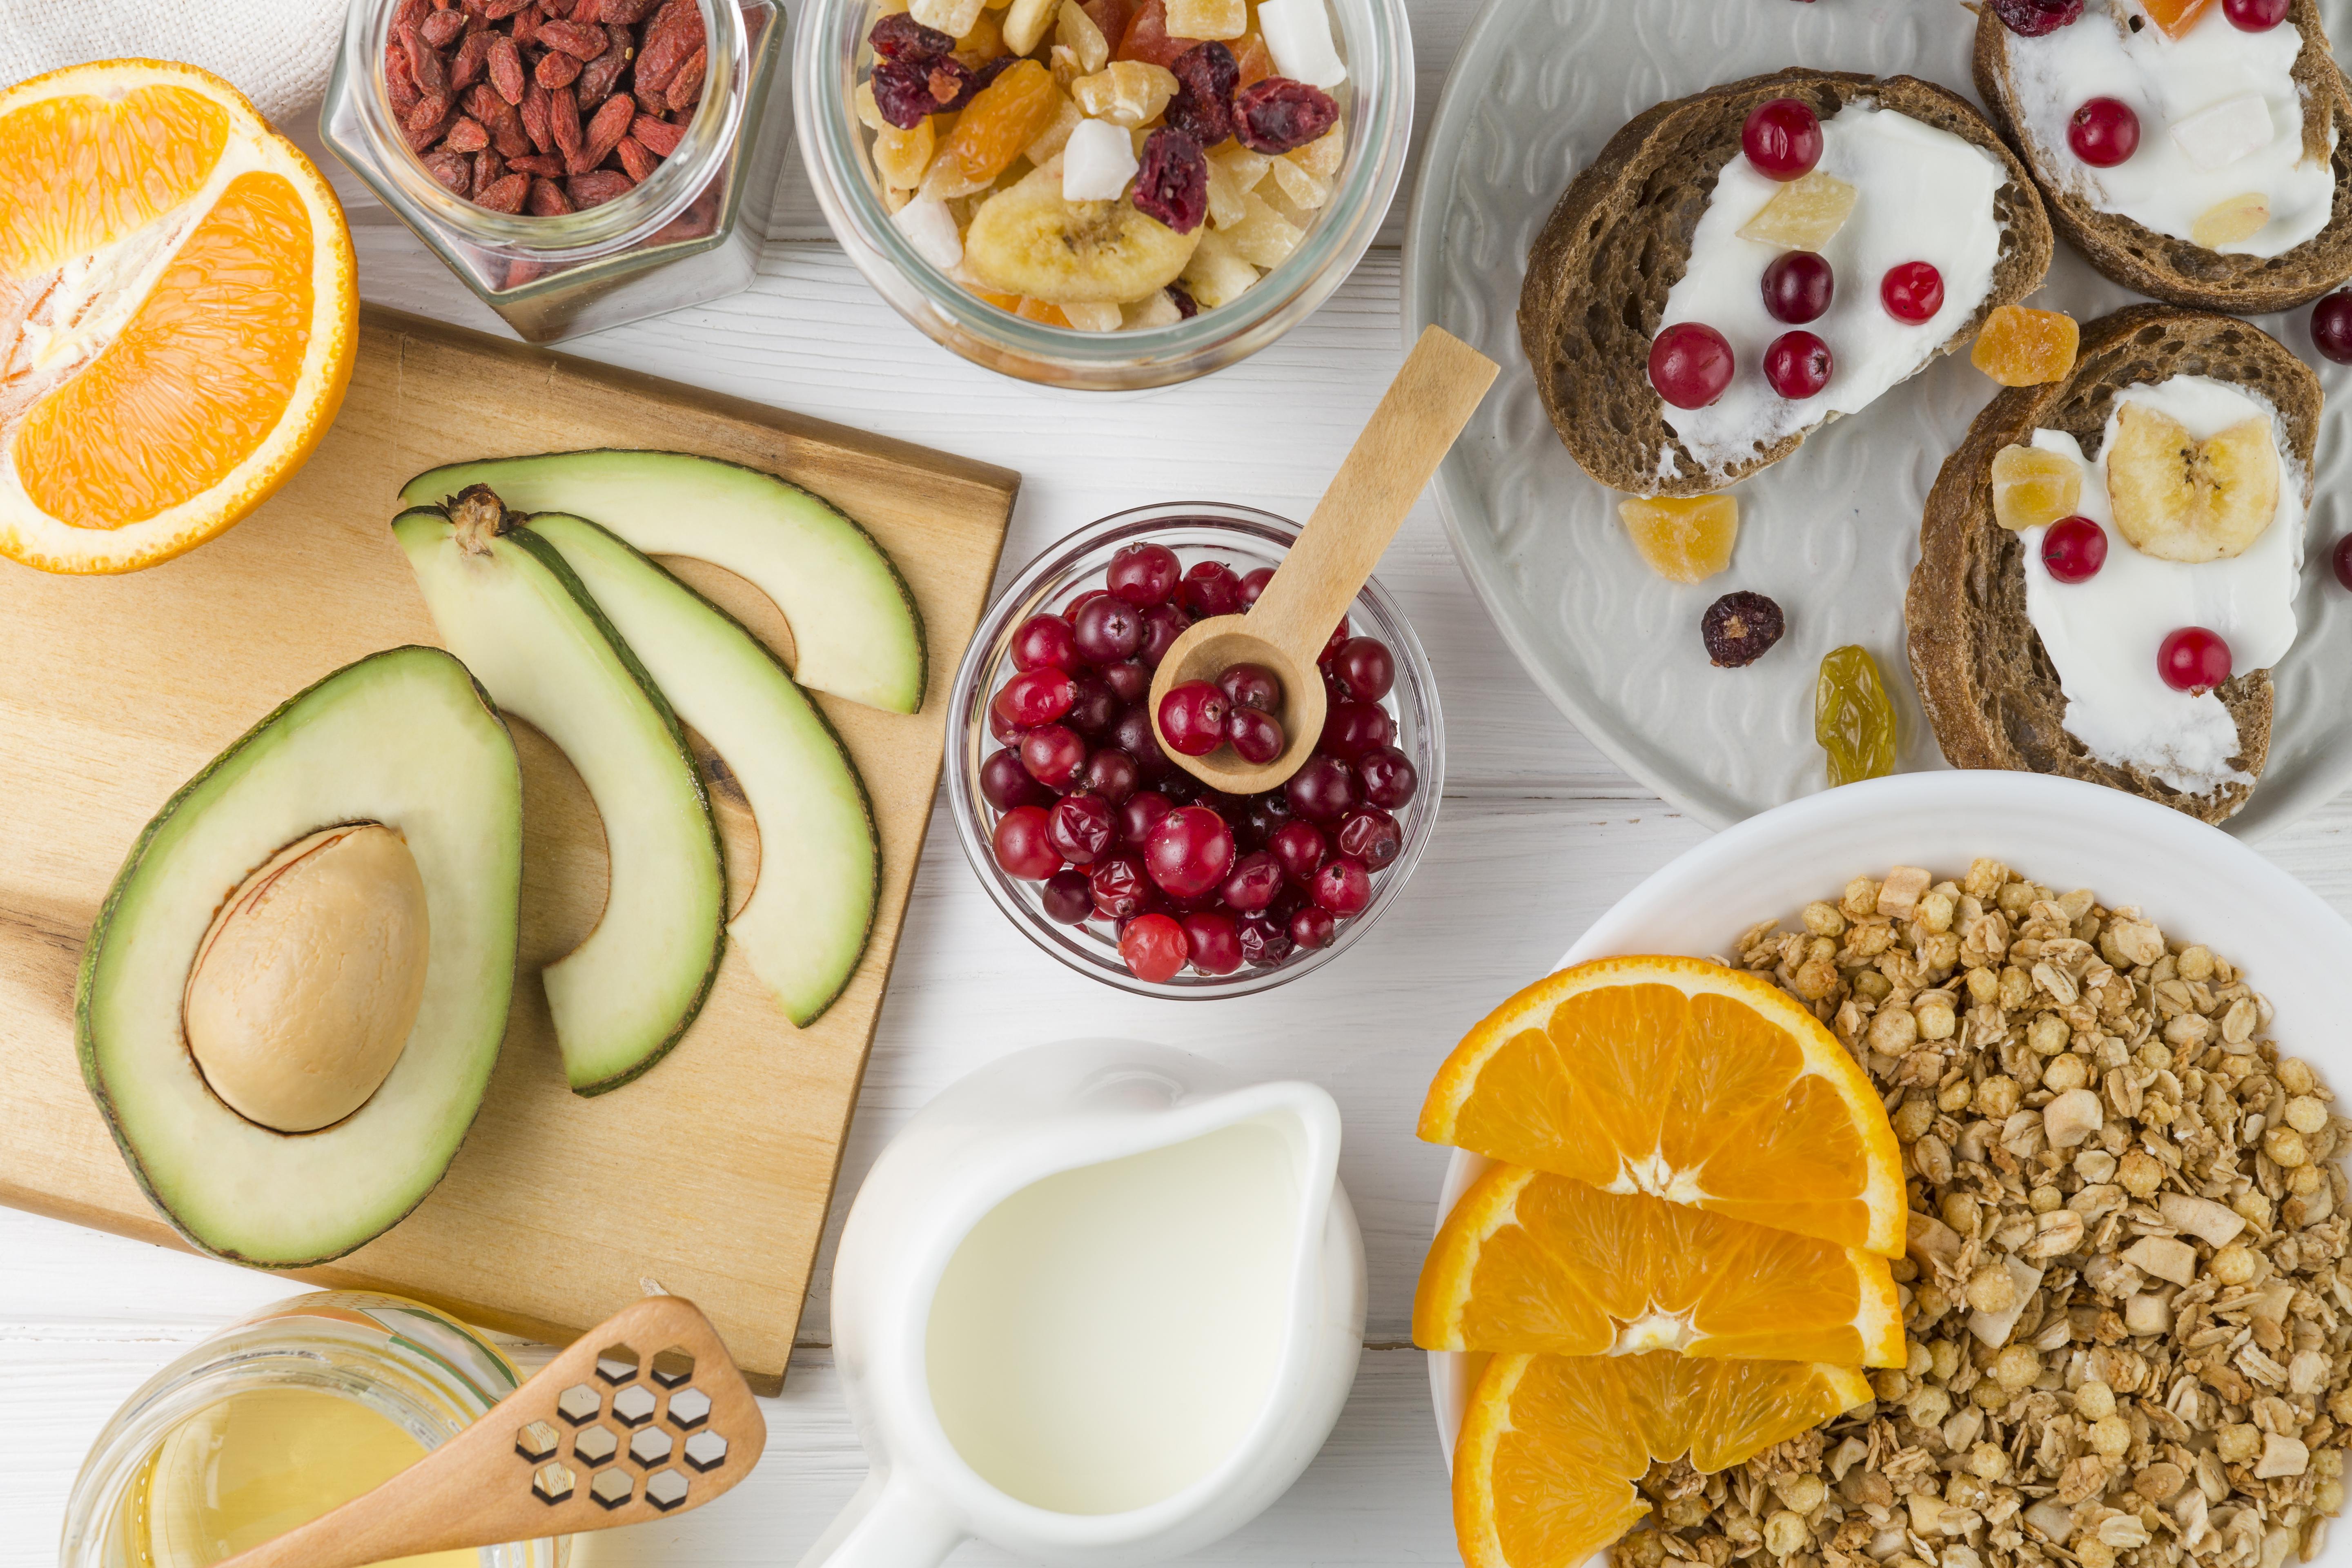 https://globalventuring.com//content/uploads/2023/06/top-view-breakfast-arrangement-with-yogurt-fruits.jpg